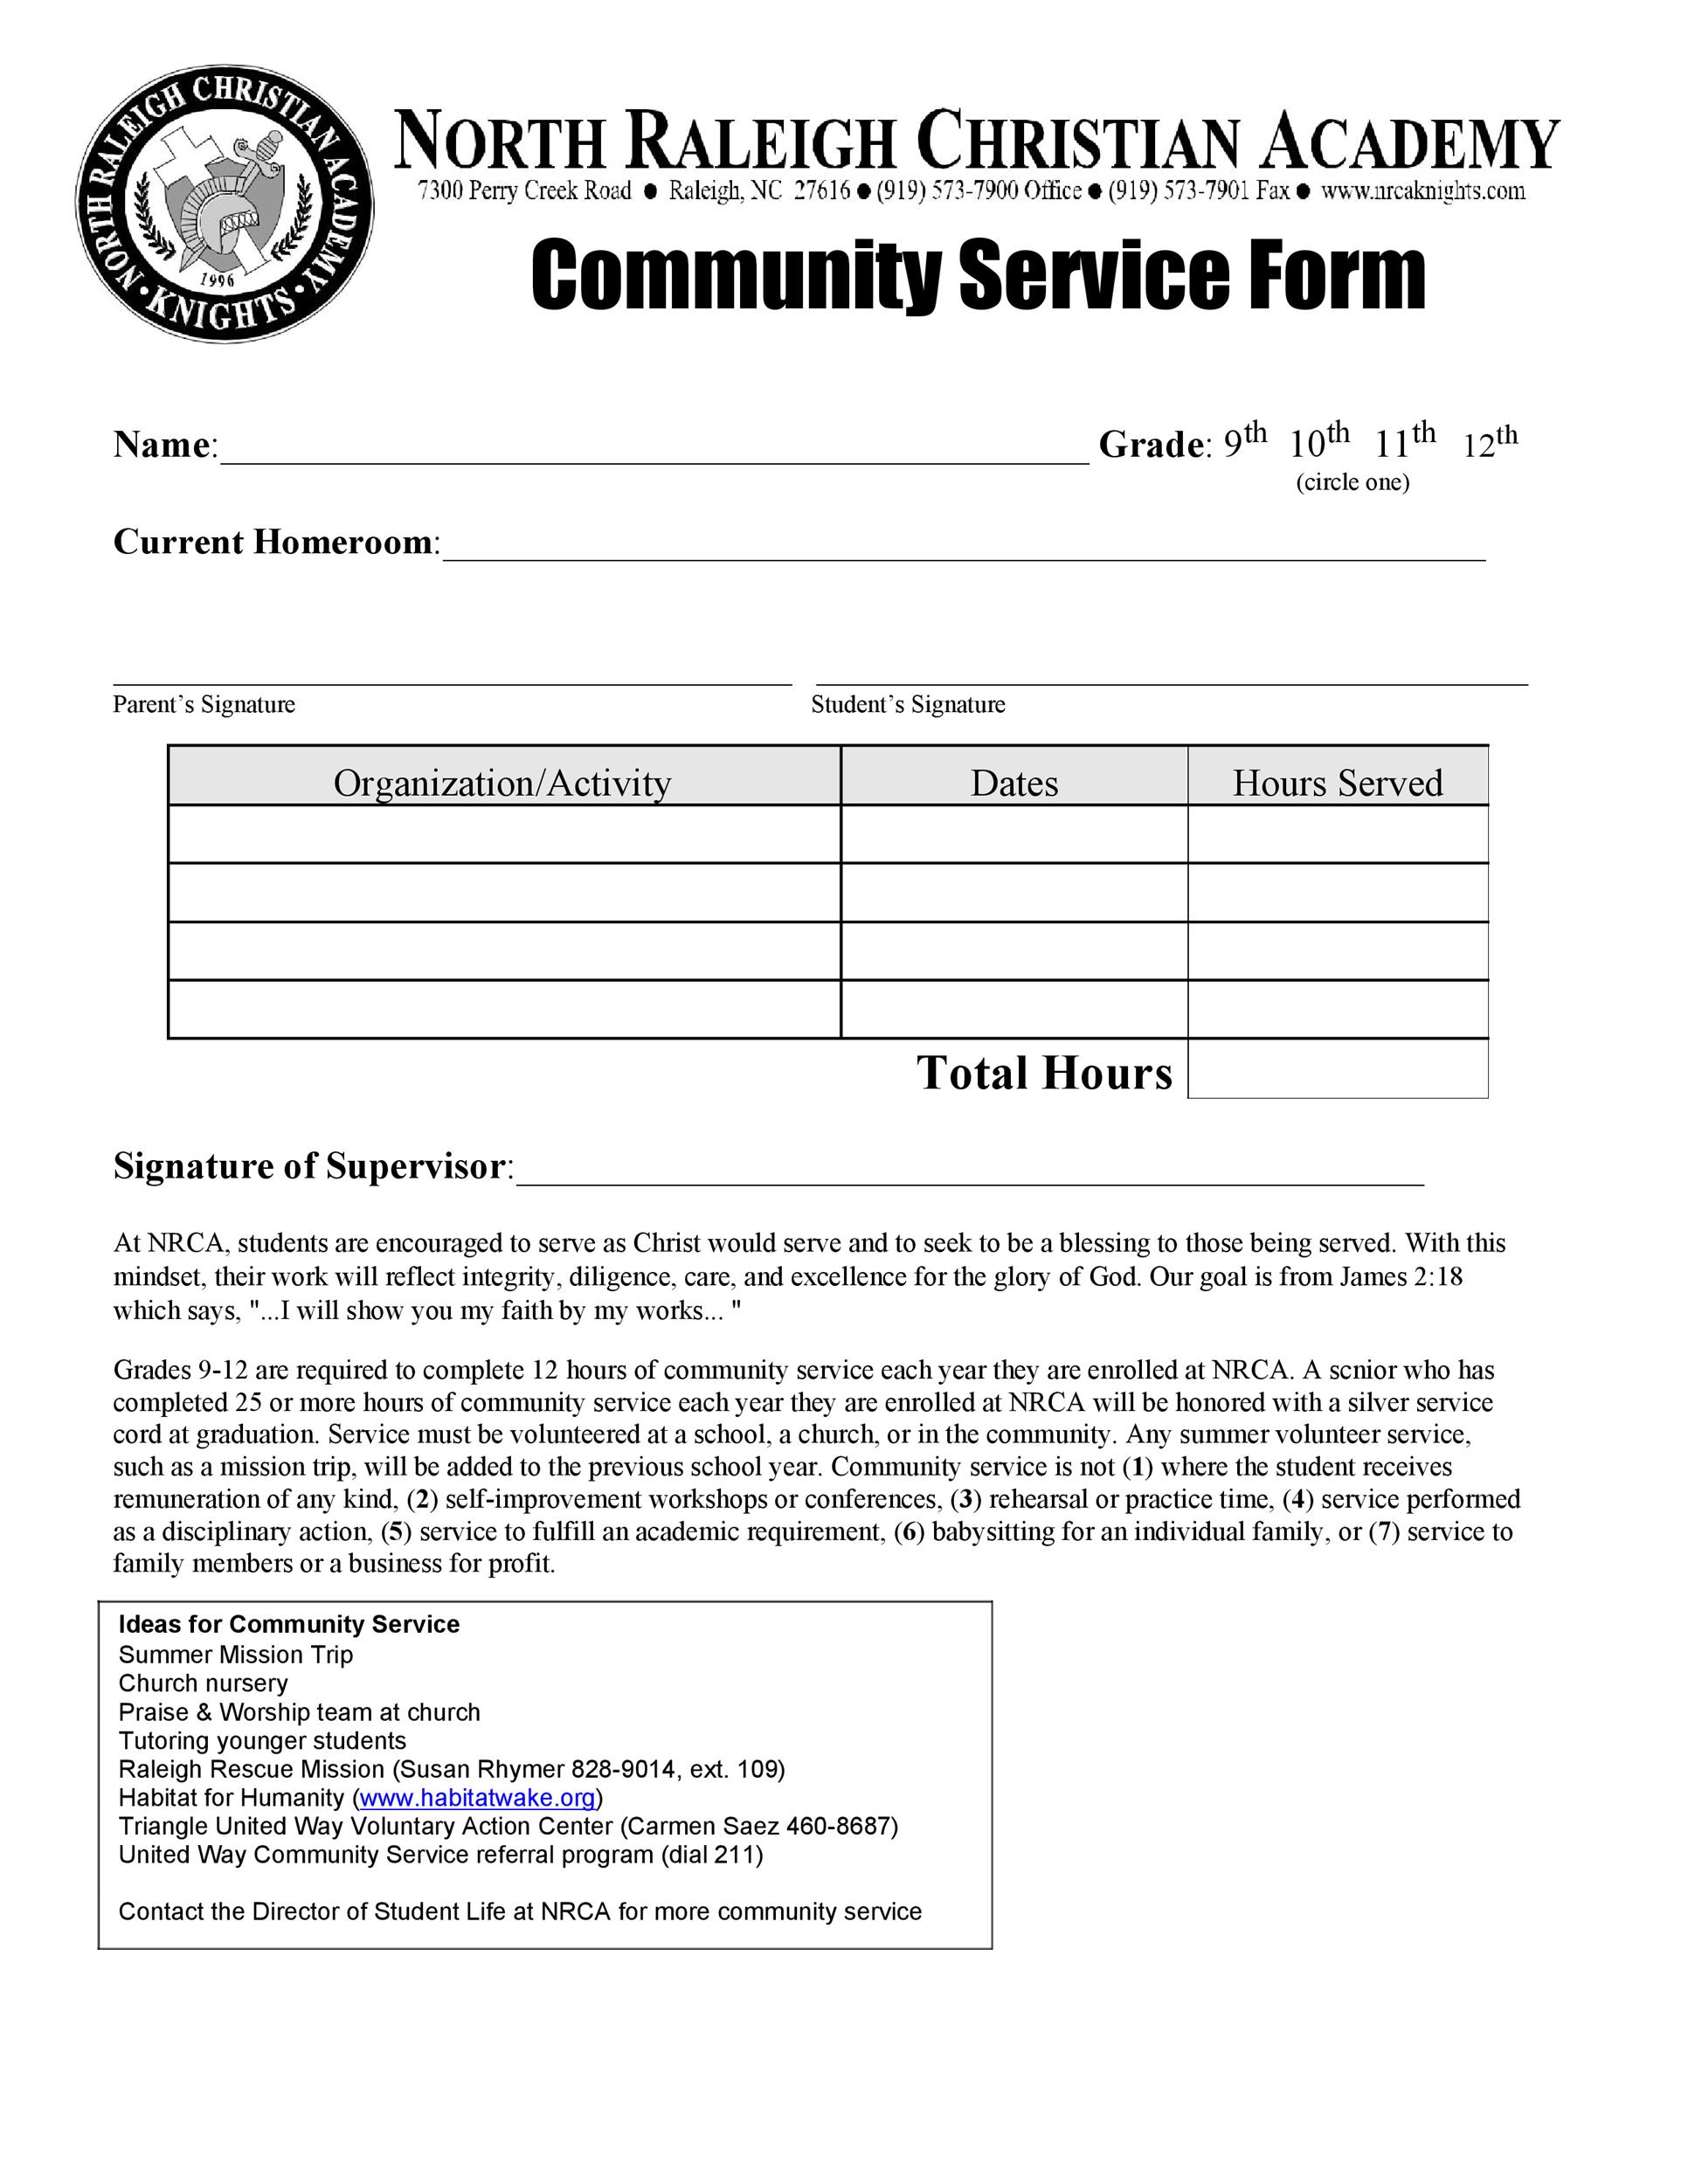 Community Service Letter 40+ Templates Verification]